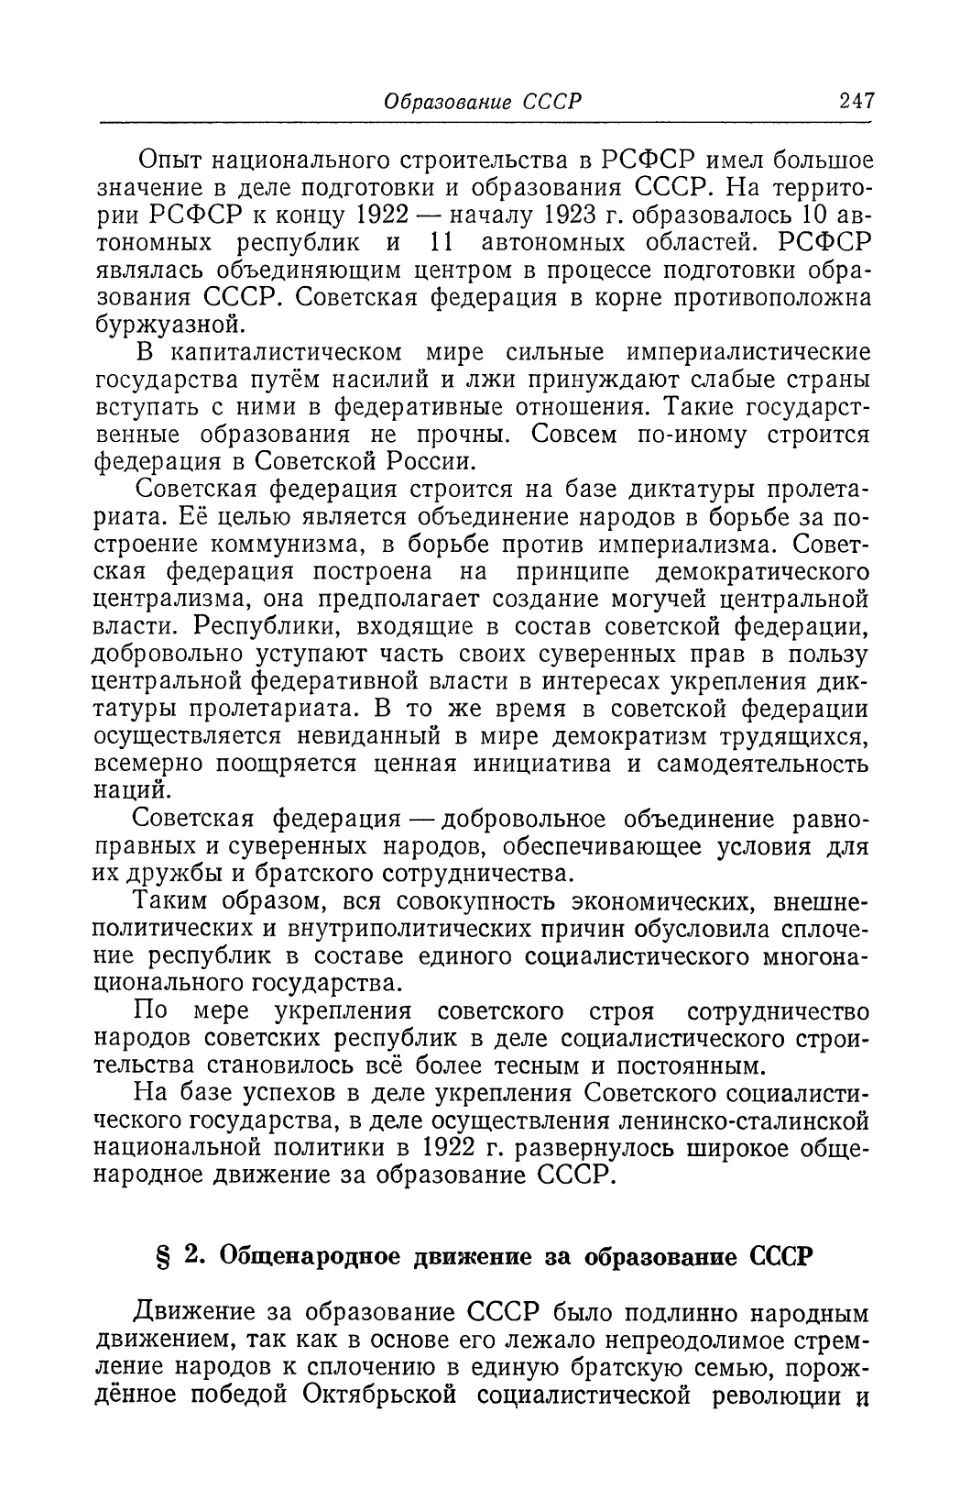 § 2. Общенародное движение за образование СССР